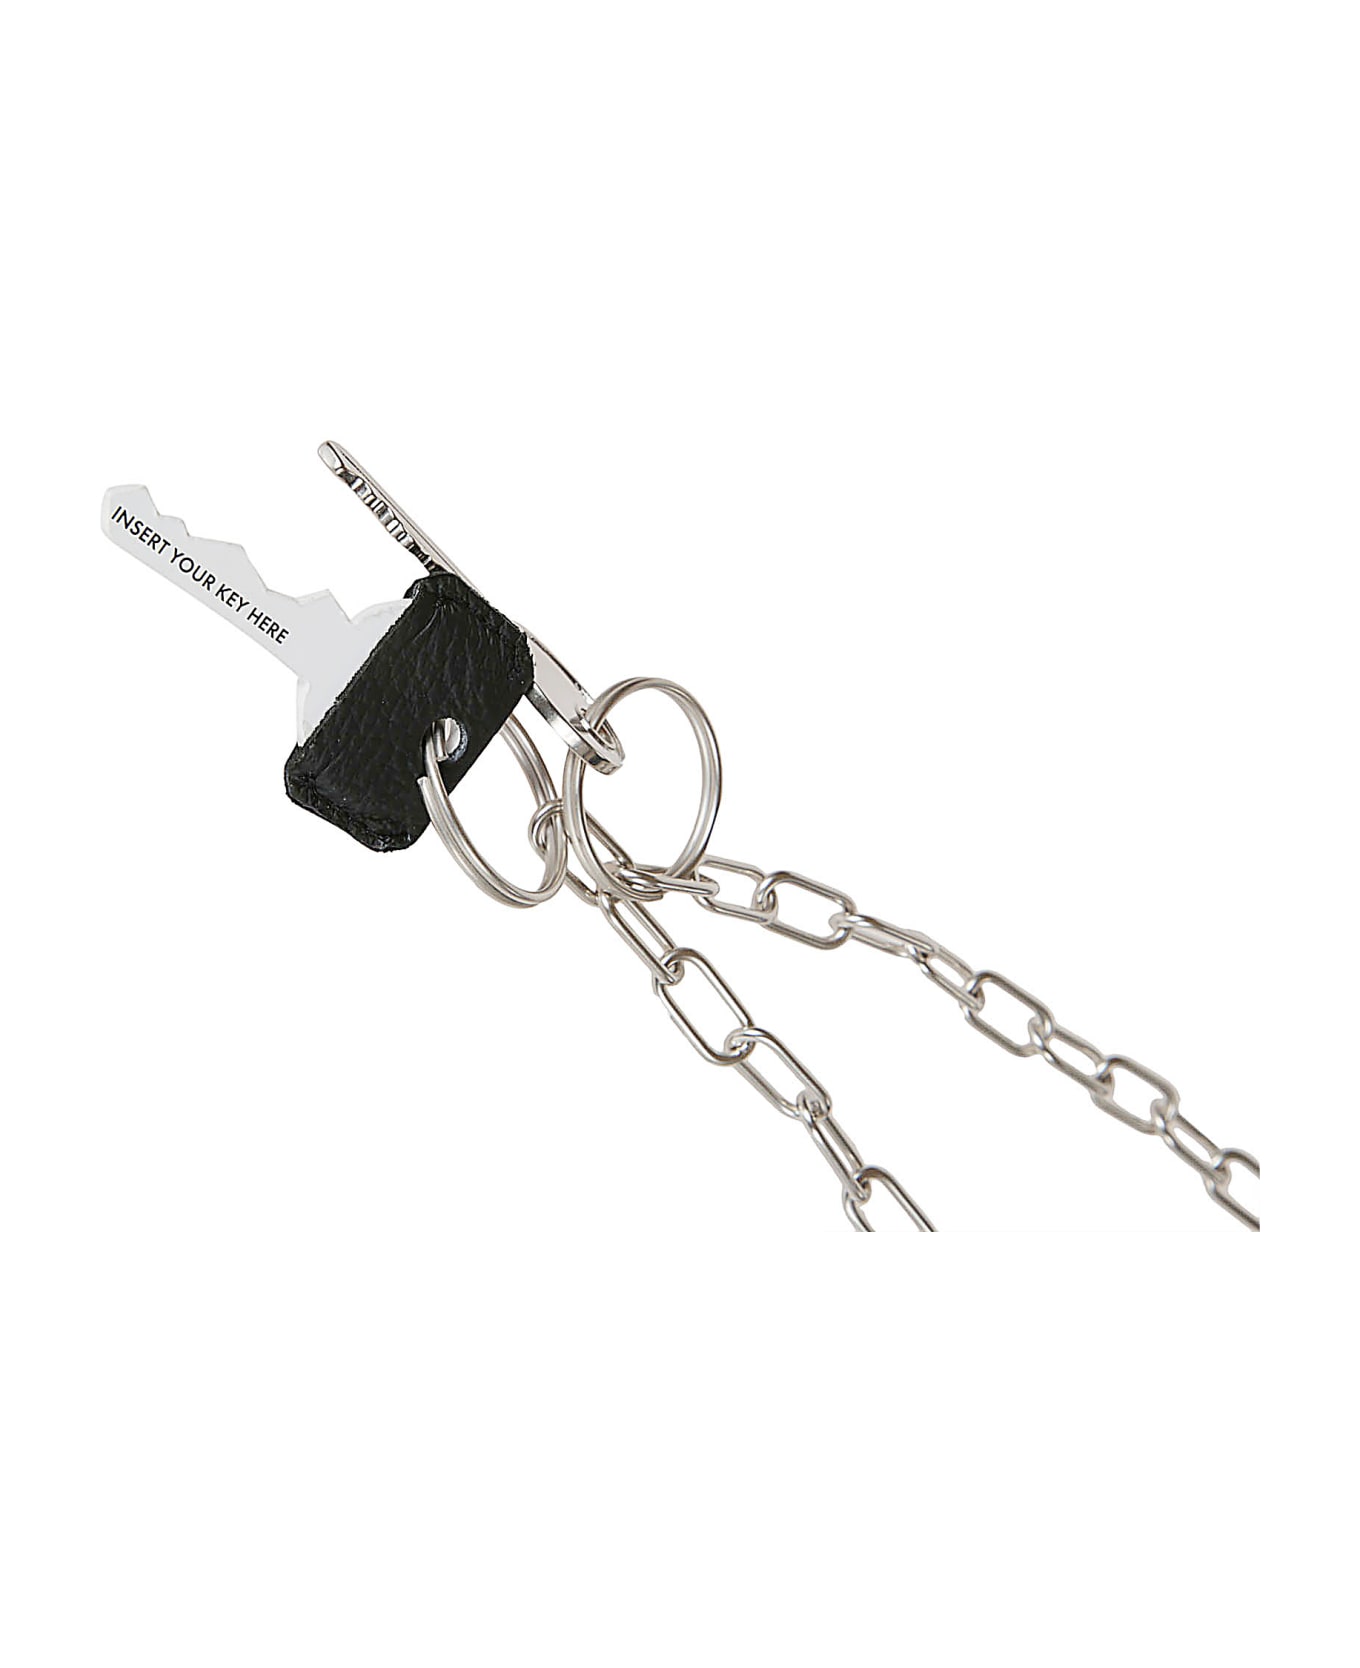 MM6 Maison Margiela Chain Key Holder - Grey/Silver